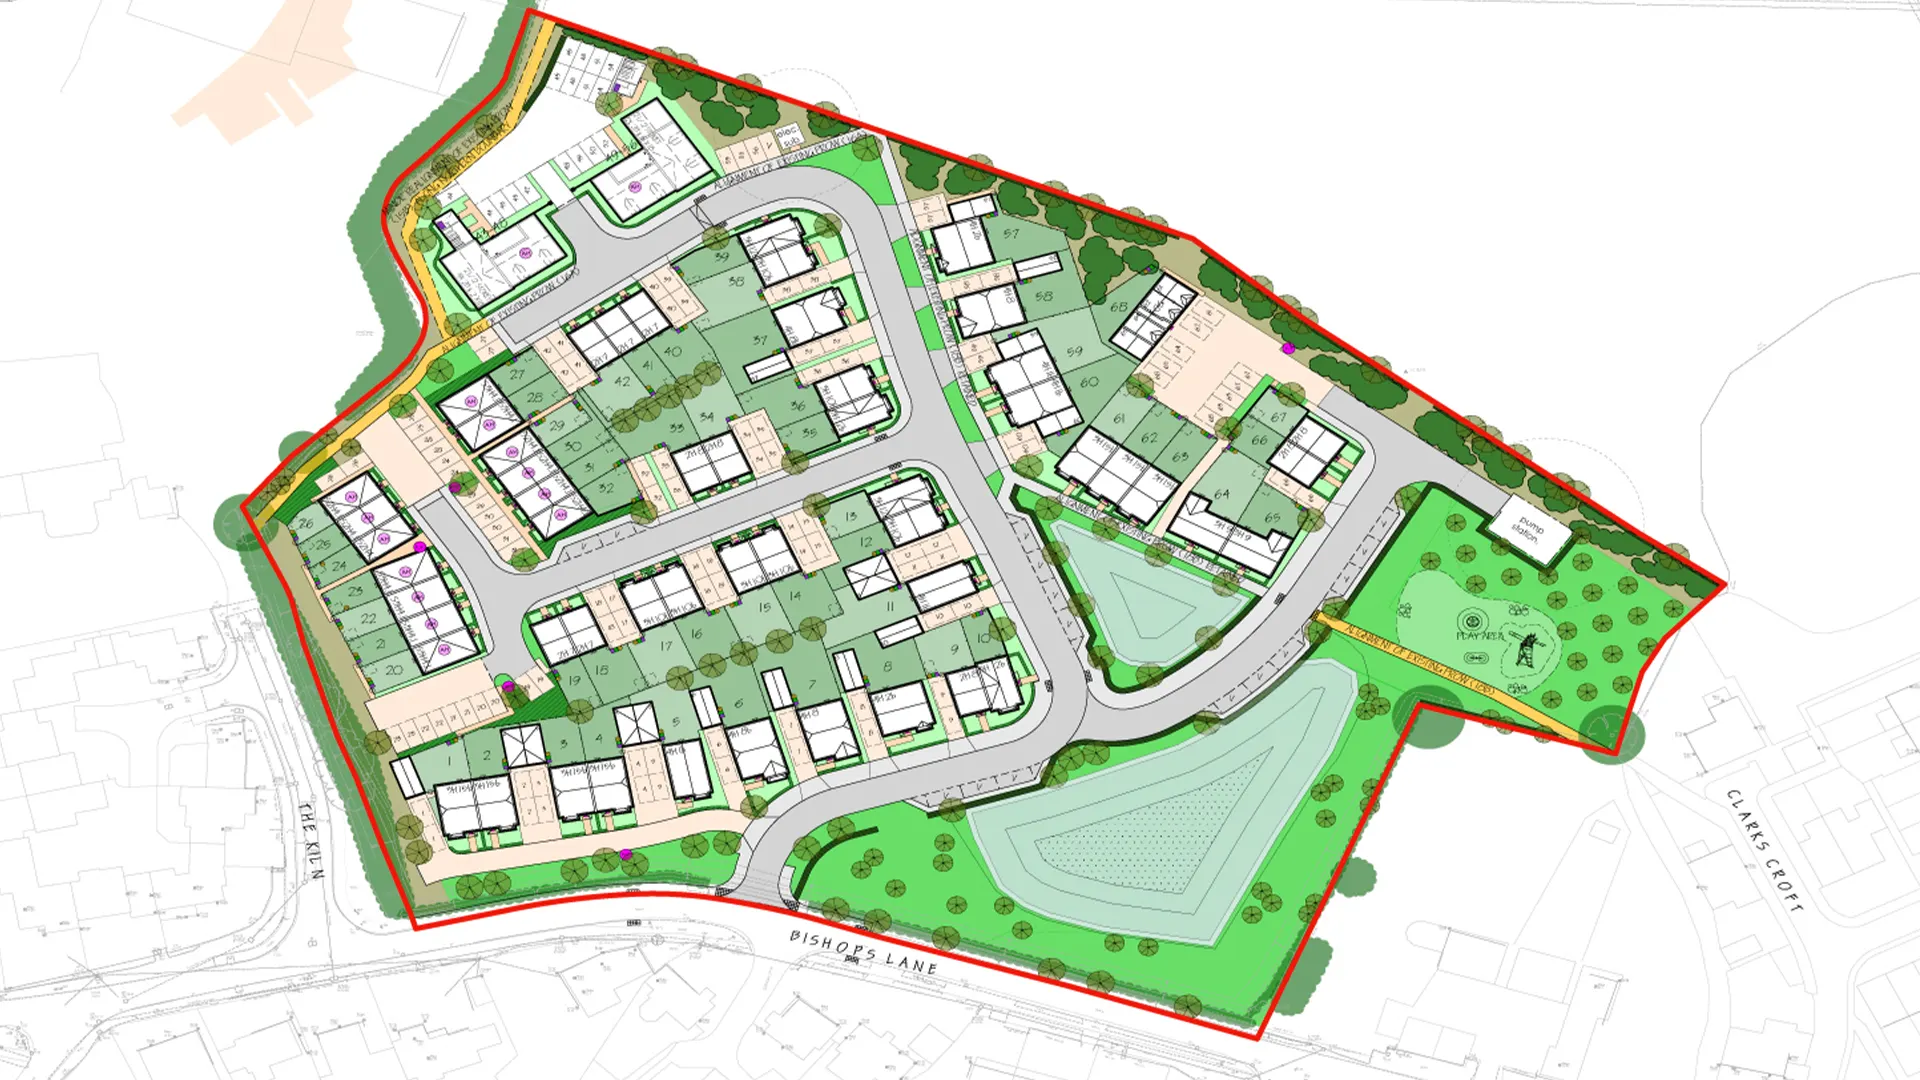 Site layout plan for Bishops Lane, Ringmer.